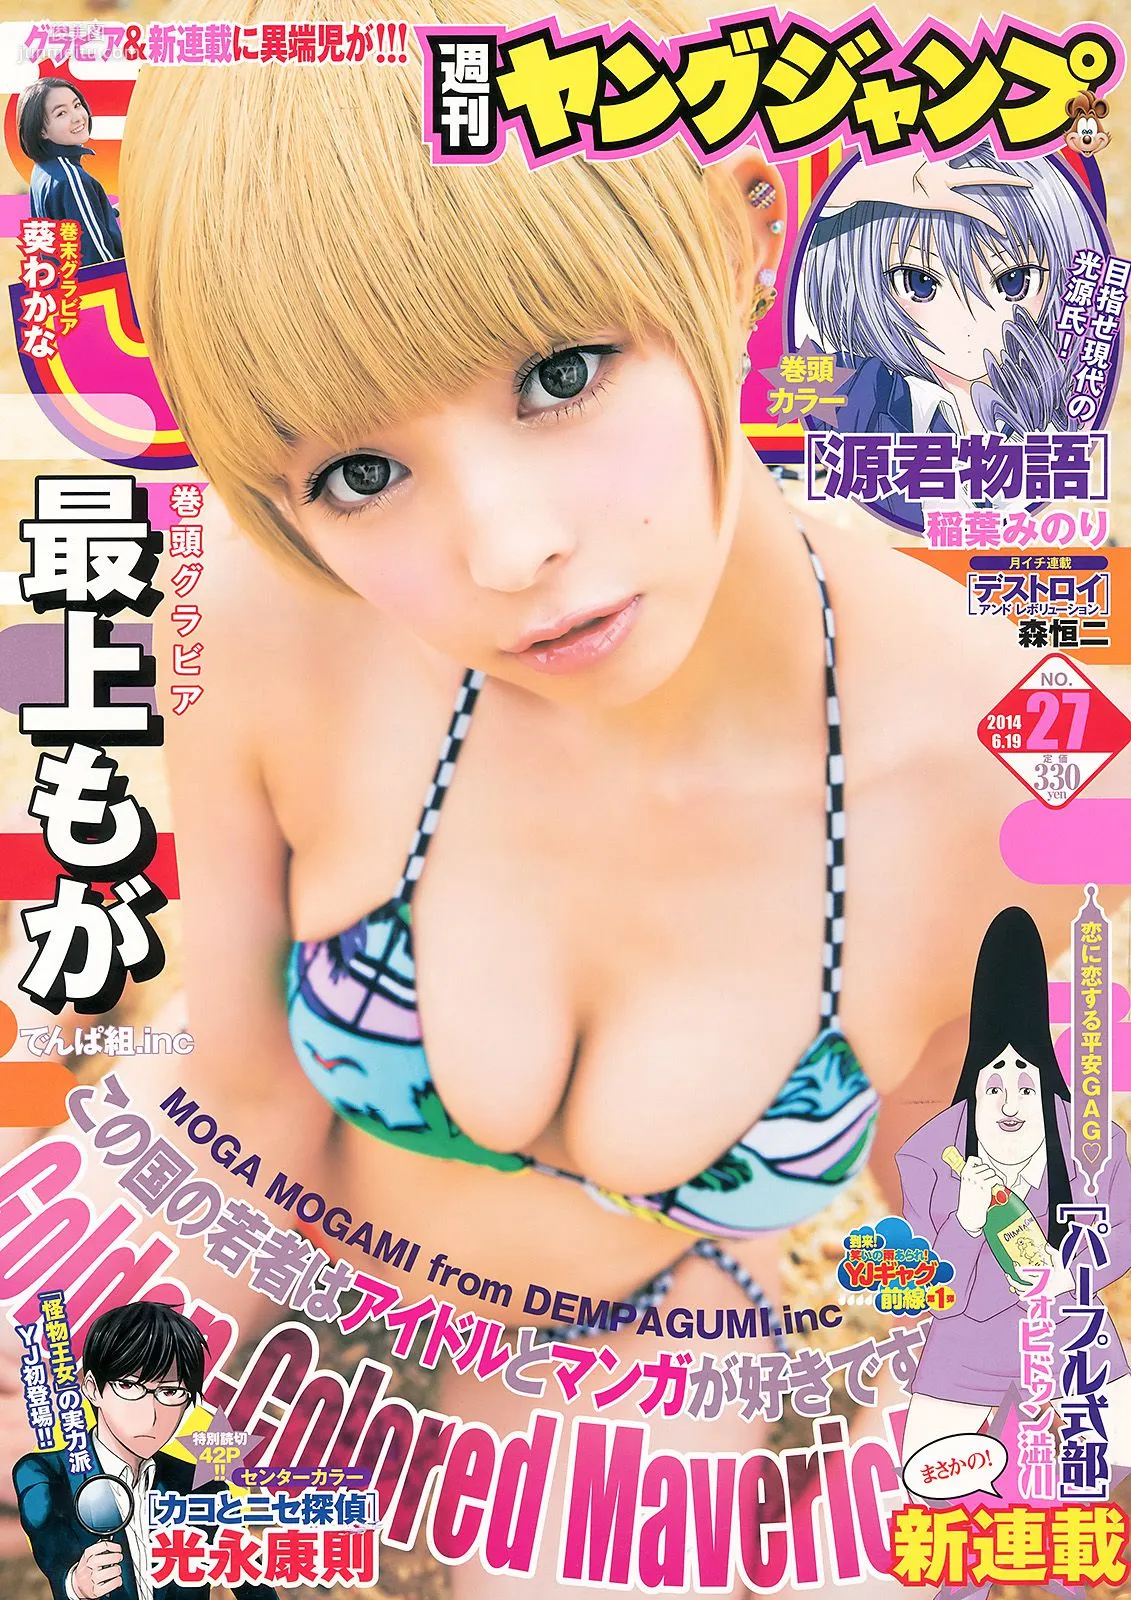 最上もが 葵わかな [Weekly Young Jump] 2014年No.27 写真杂志1